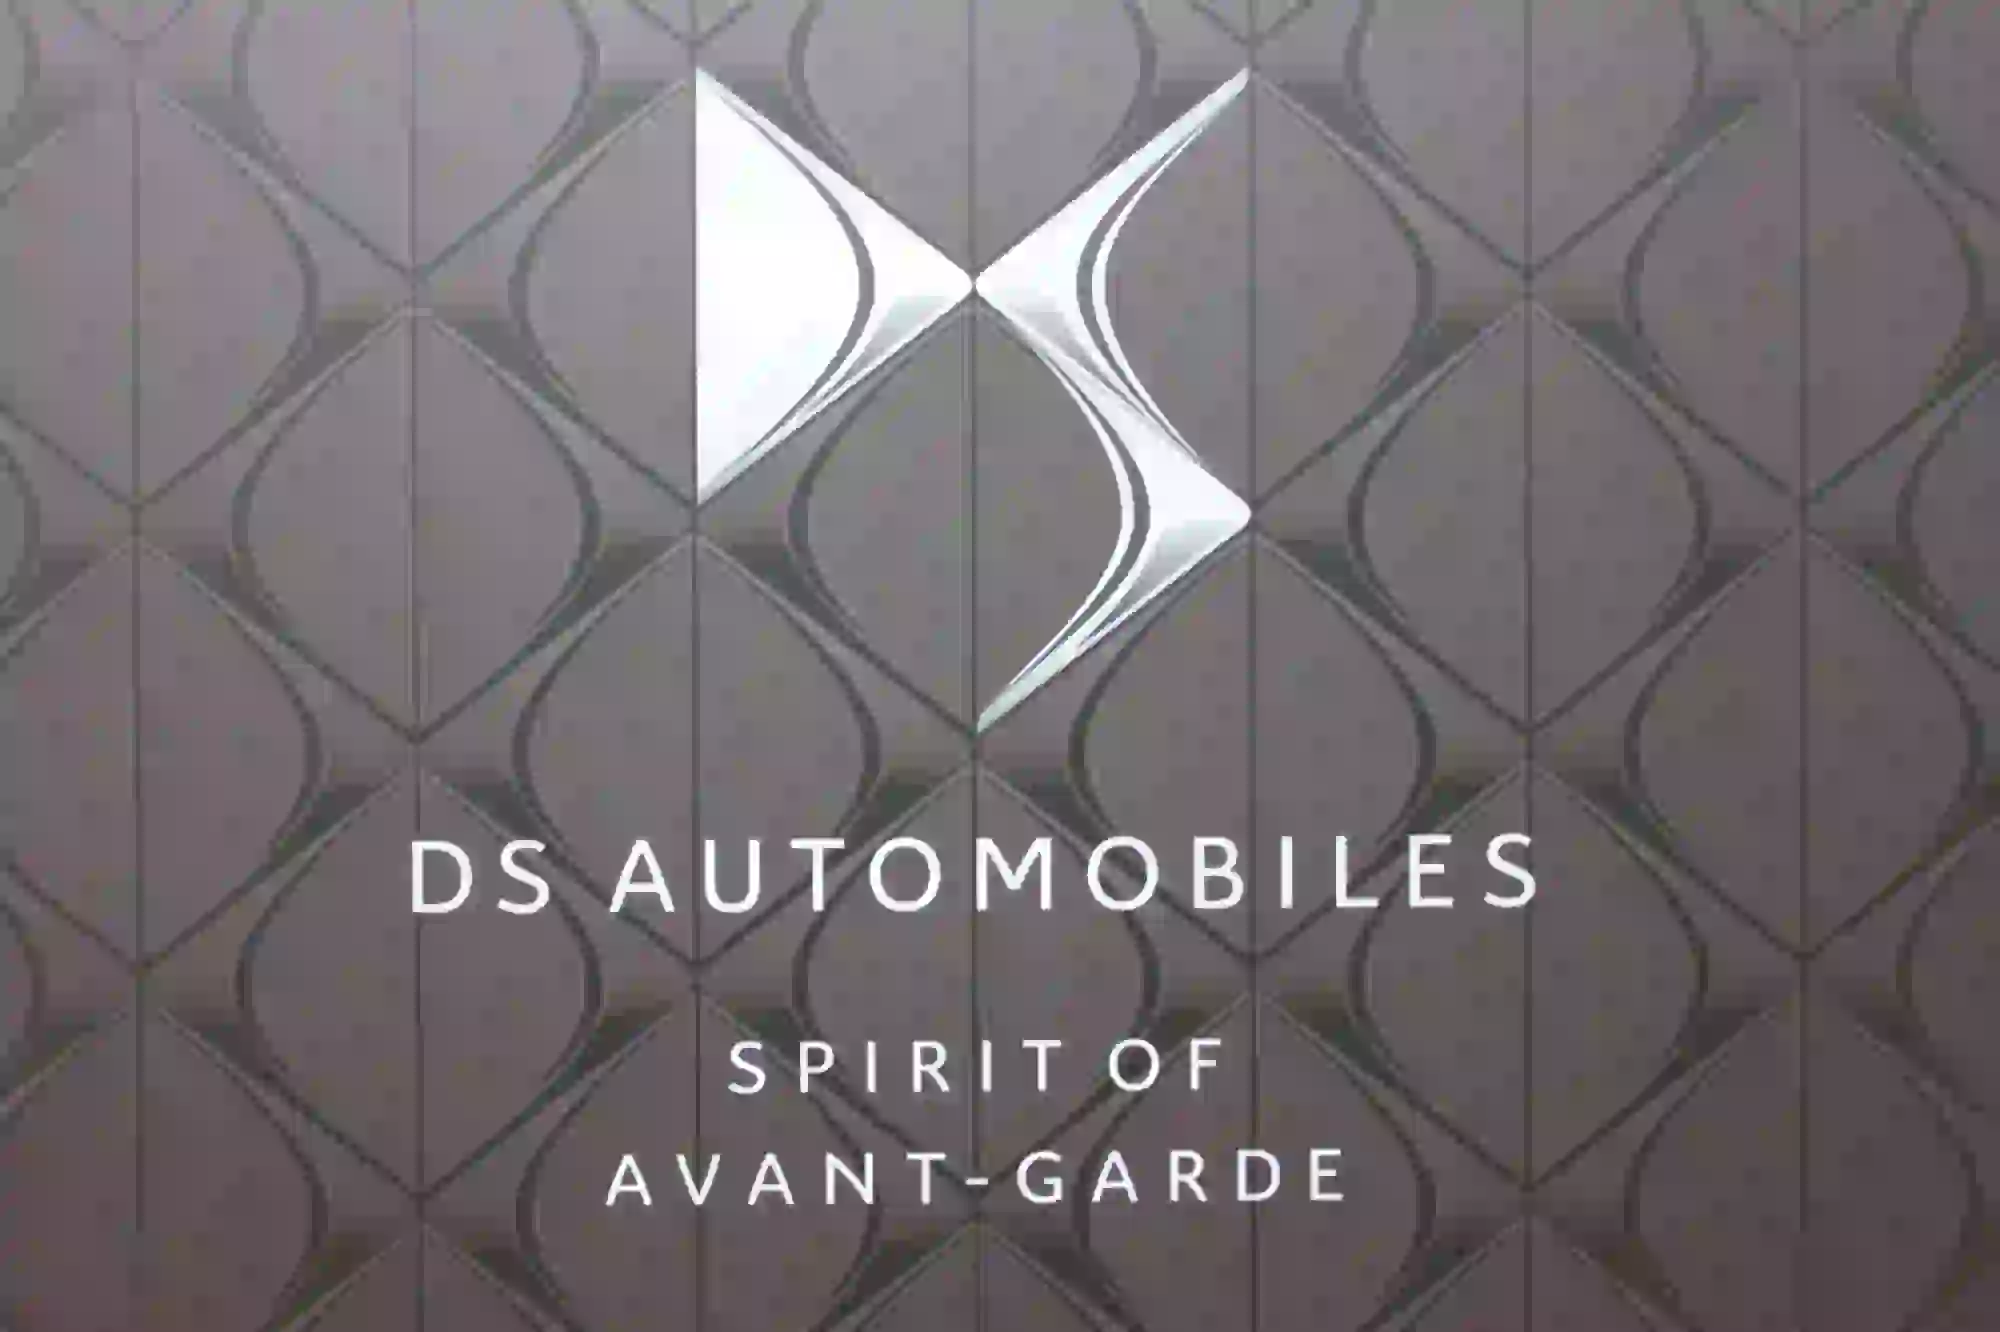 DS Automobiles - Evento Design for Life 17-04-2015 - 6